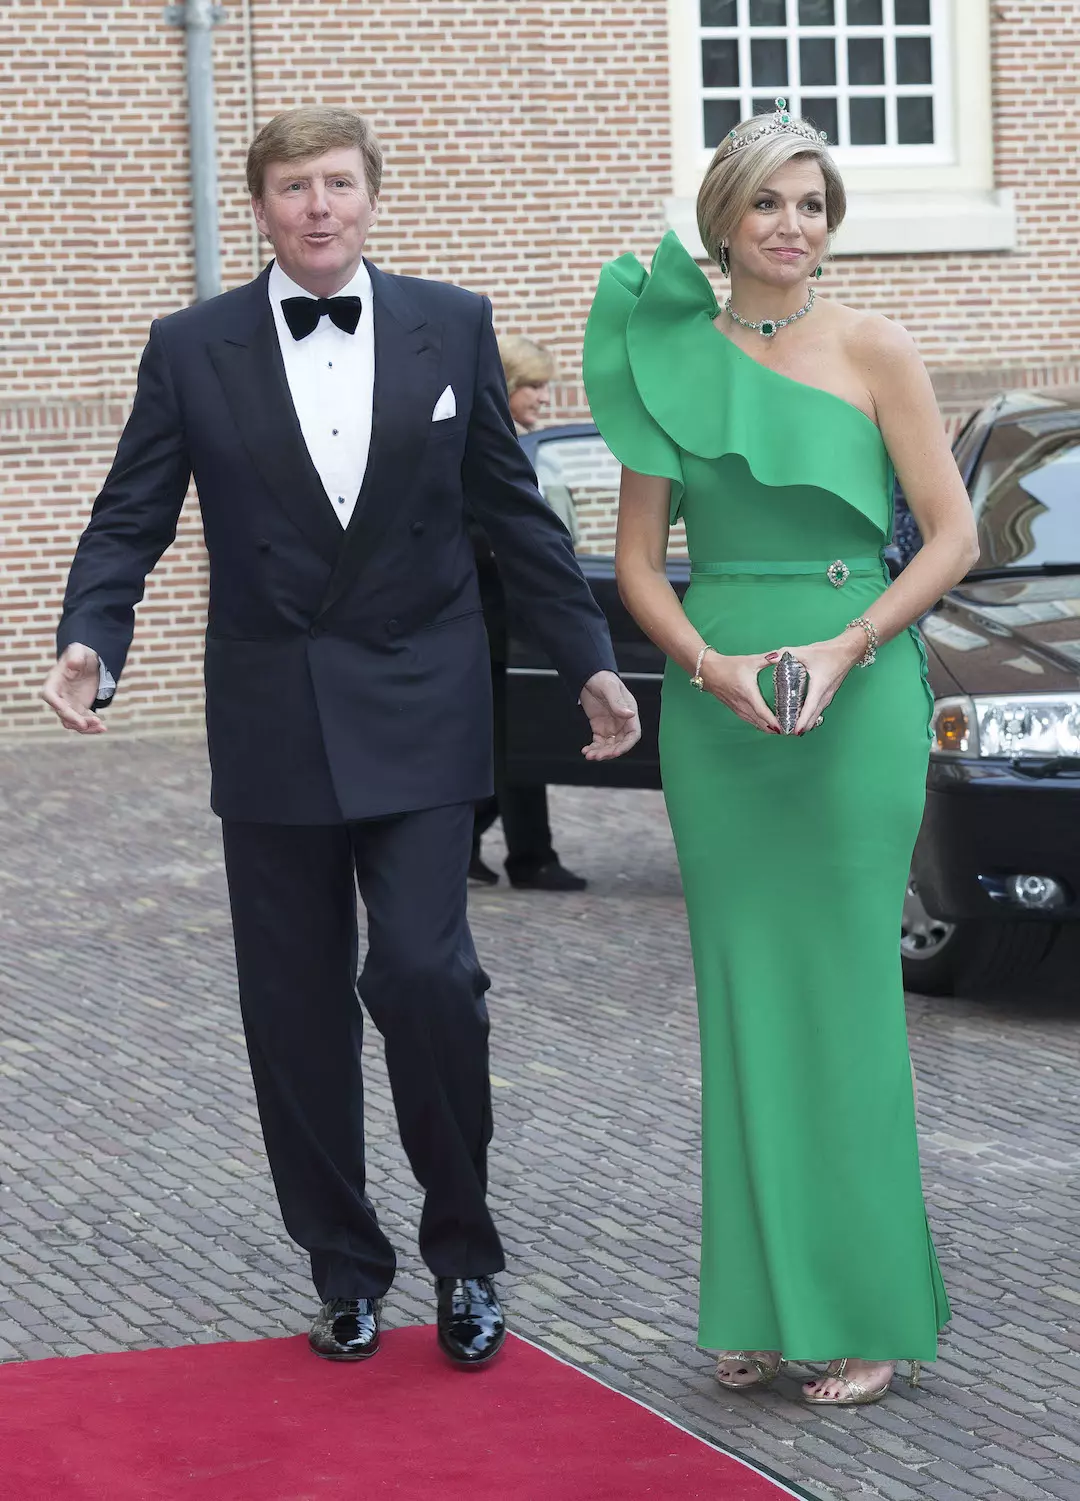 3. Juni 2014: Die niederländische Königsfamilie gibt ein Dinner zu Ehren von Fürst Albert. Maxima trägt ein froschgrünes Kleid von Lanvin. © Michel Porro/Getty Images